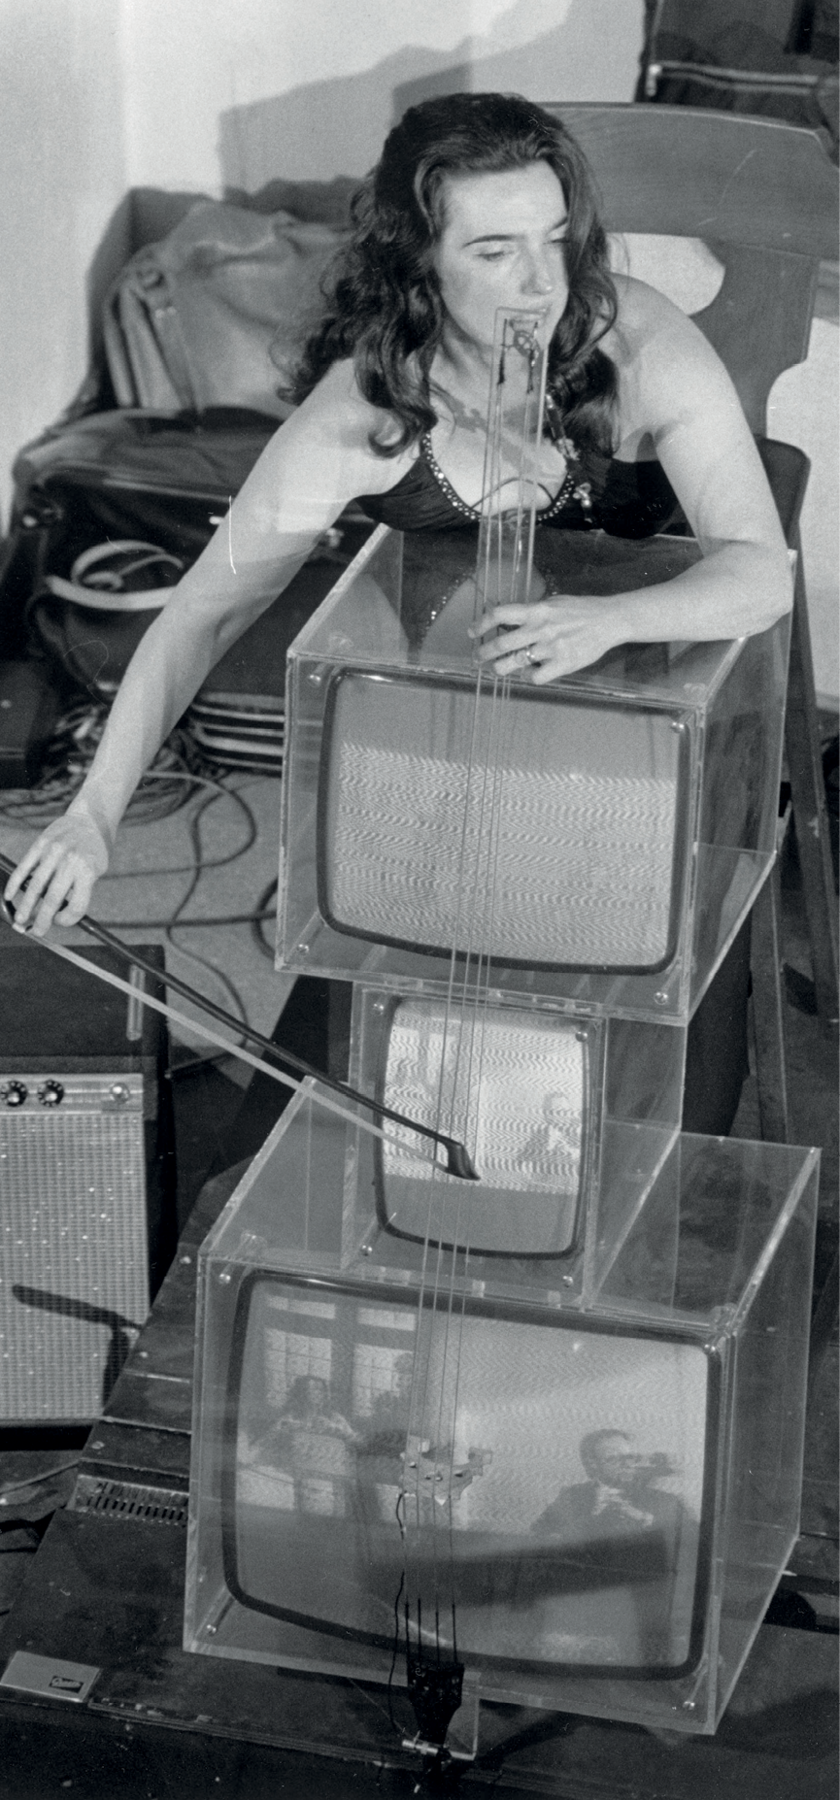 Fotografia em preto e branco. Uma mulher com cabelos escuros e compridos, usando um vestido, está de pé e toca um violoncelo que é feito de três televisores de tubo empilhados. Os televisores têm estrutura de acrílico.